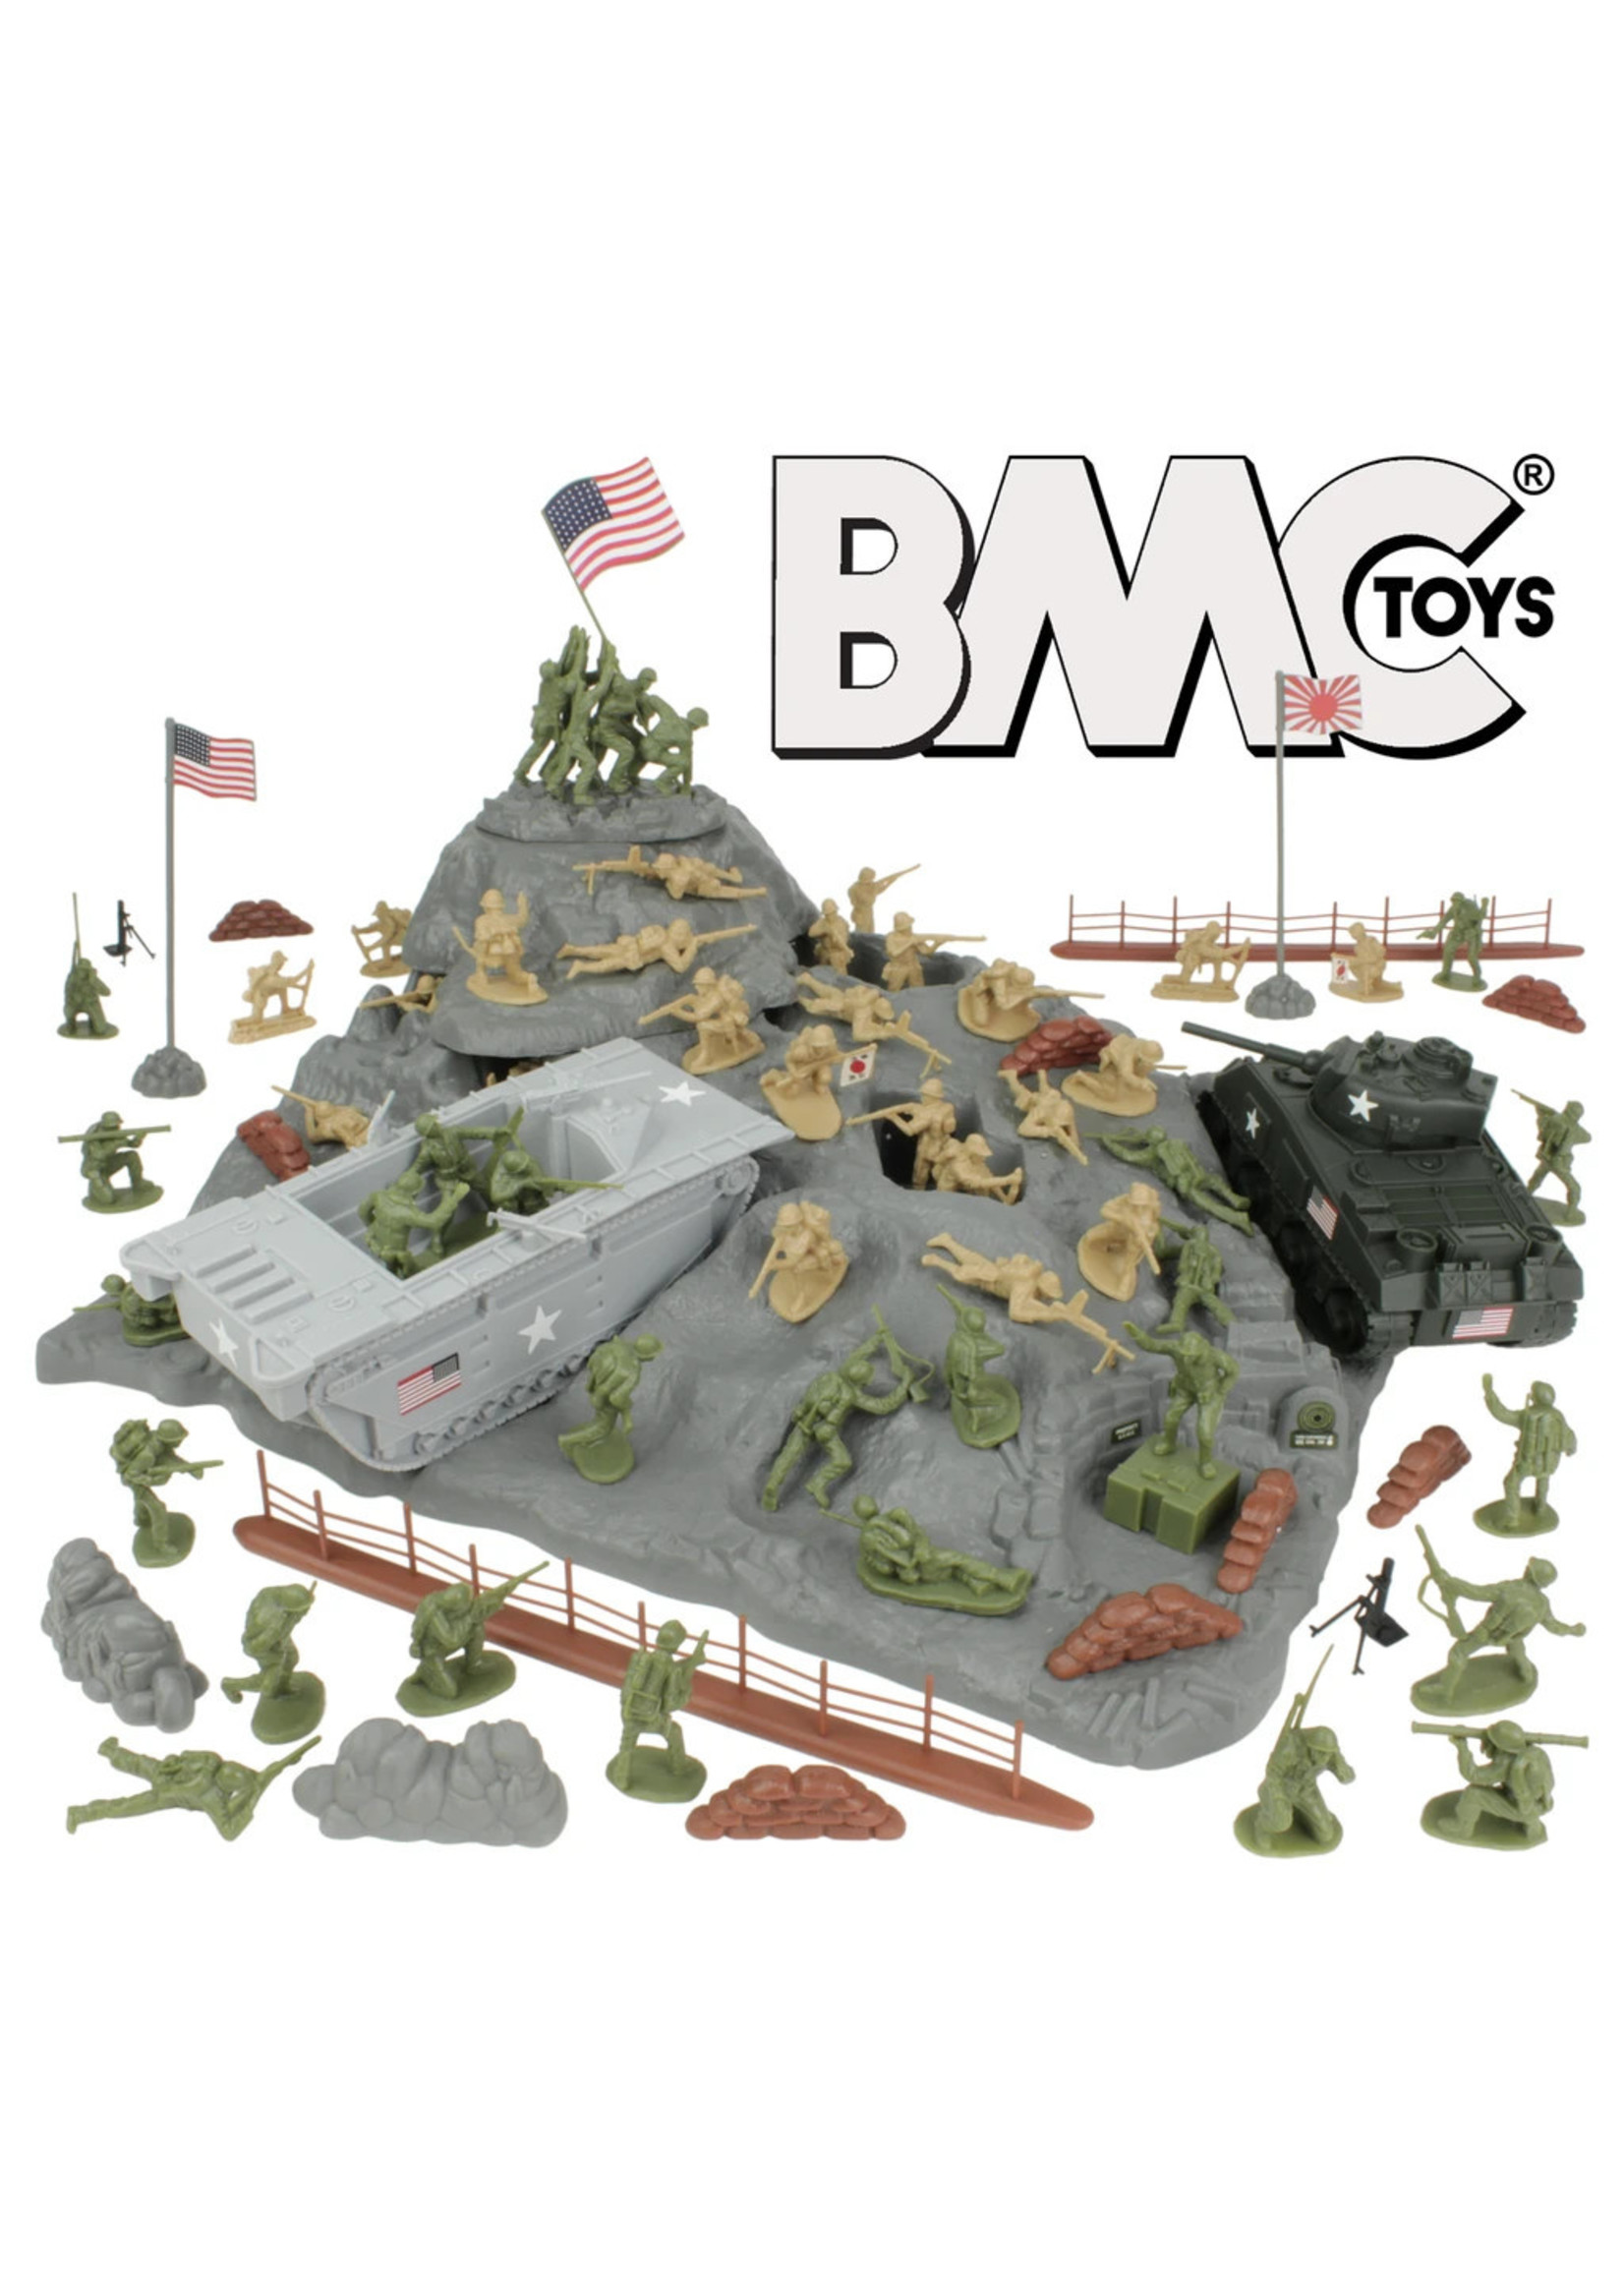 BMC 40036 - WWII IWO Jima Plastic Army Men, Tanks, and Island - 72 Piece